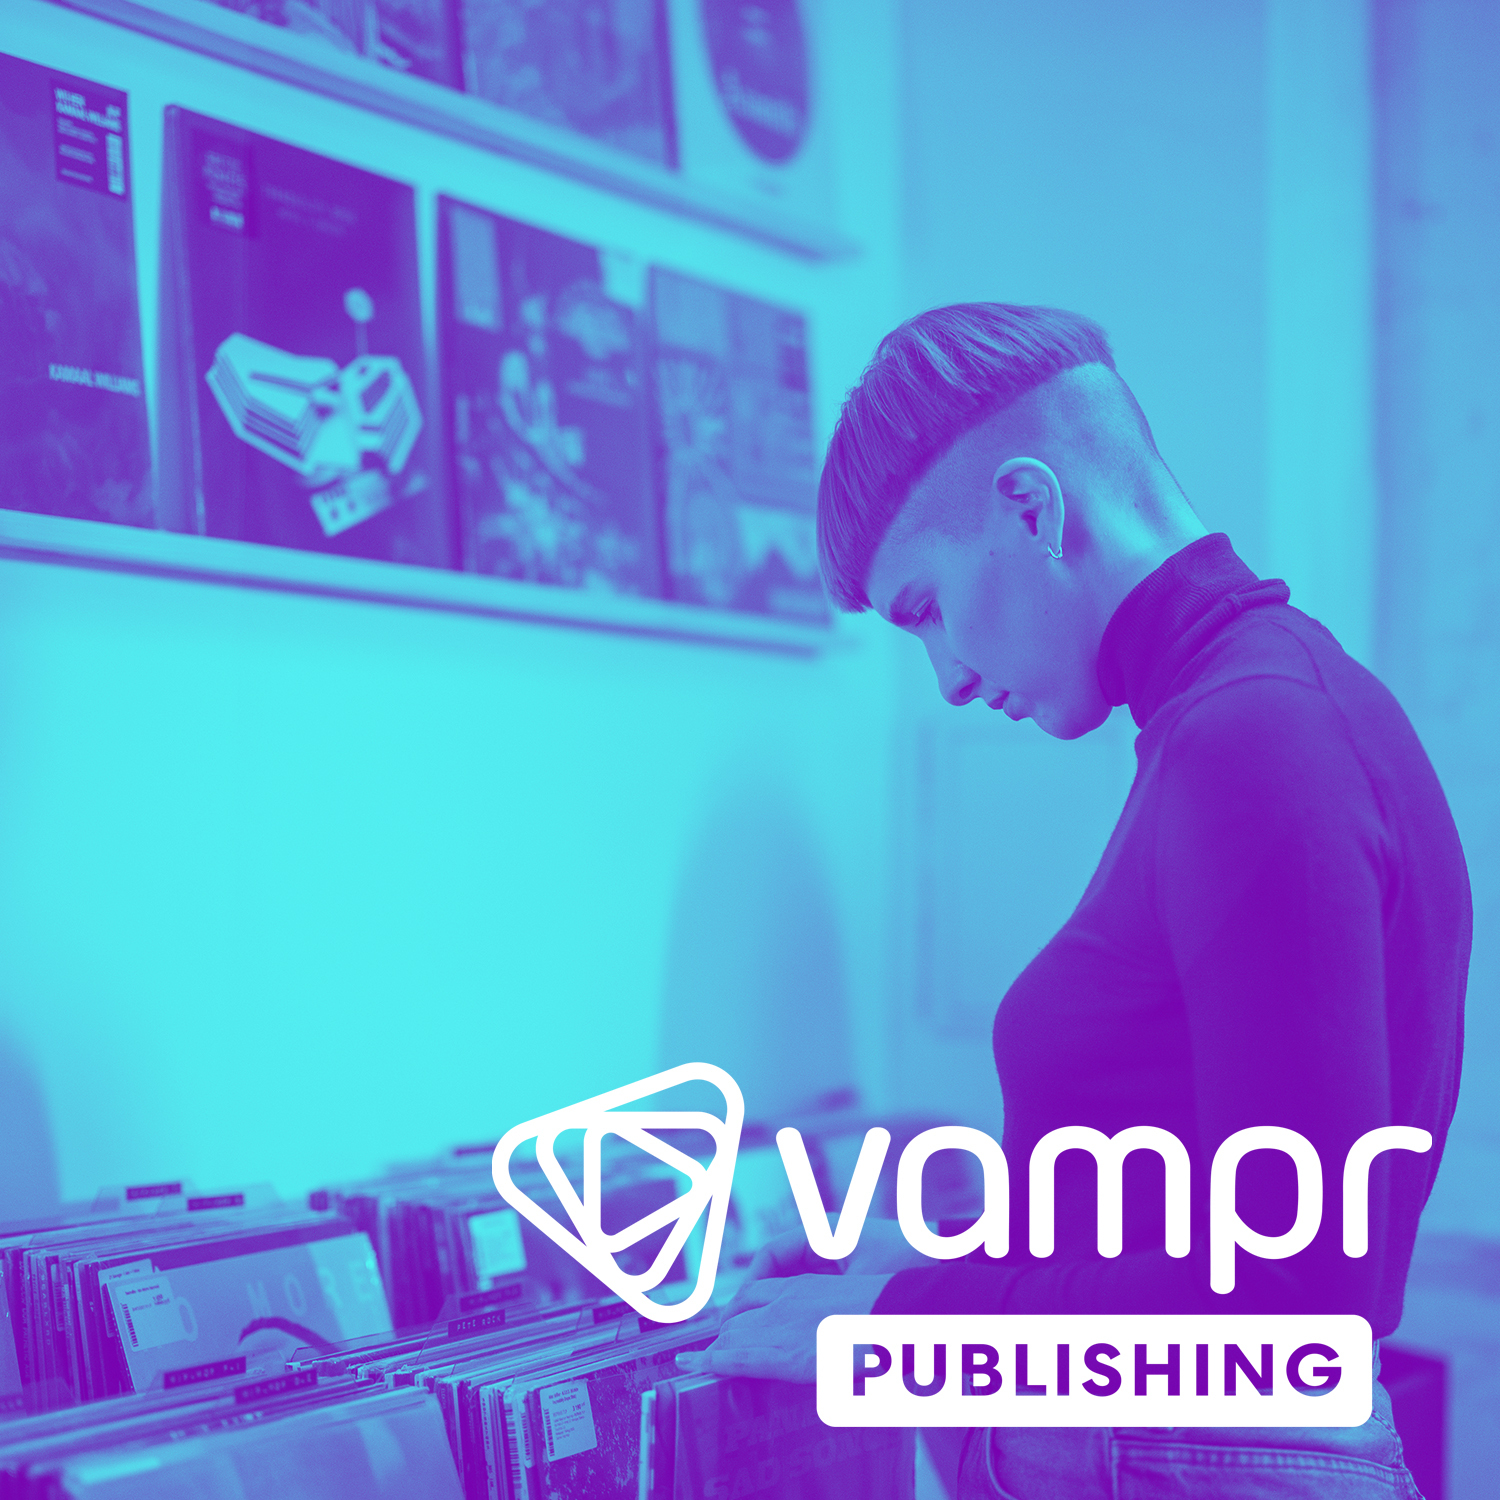 Vampr Publishing 2.0